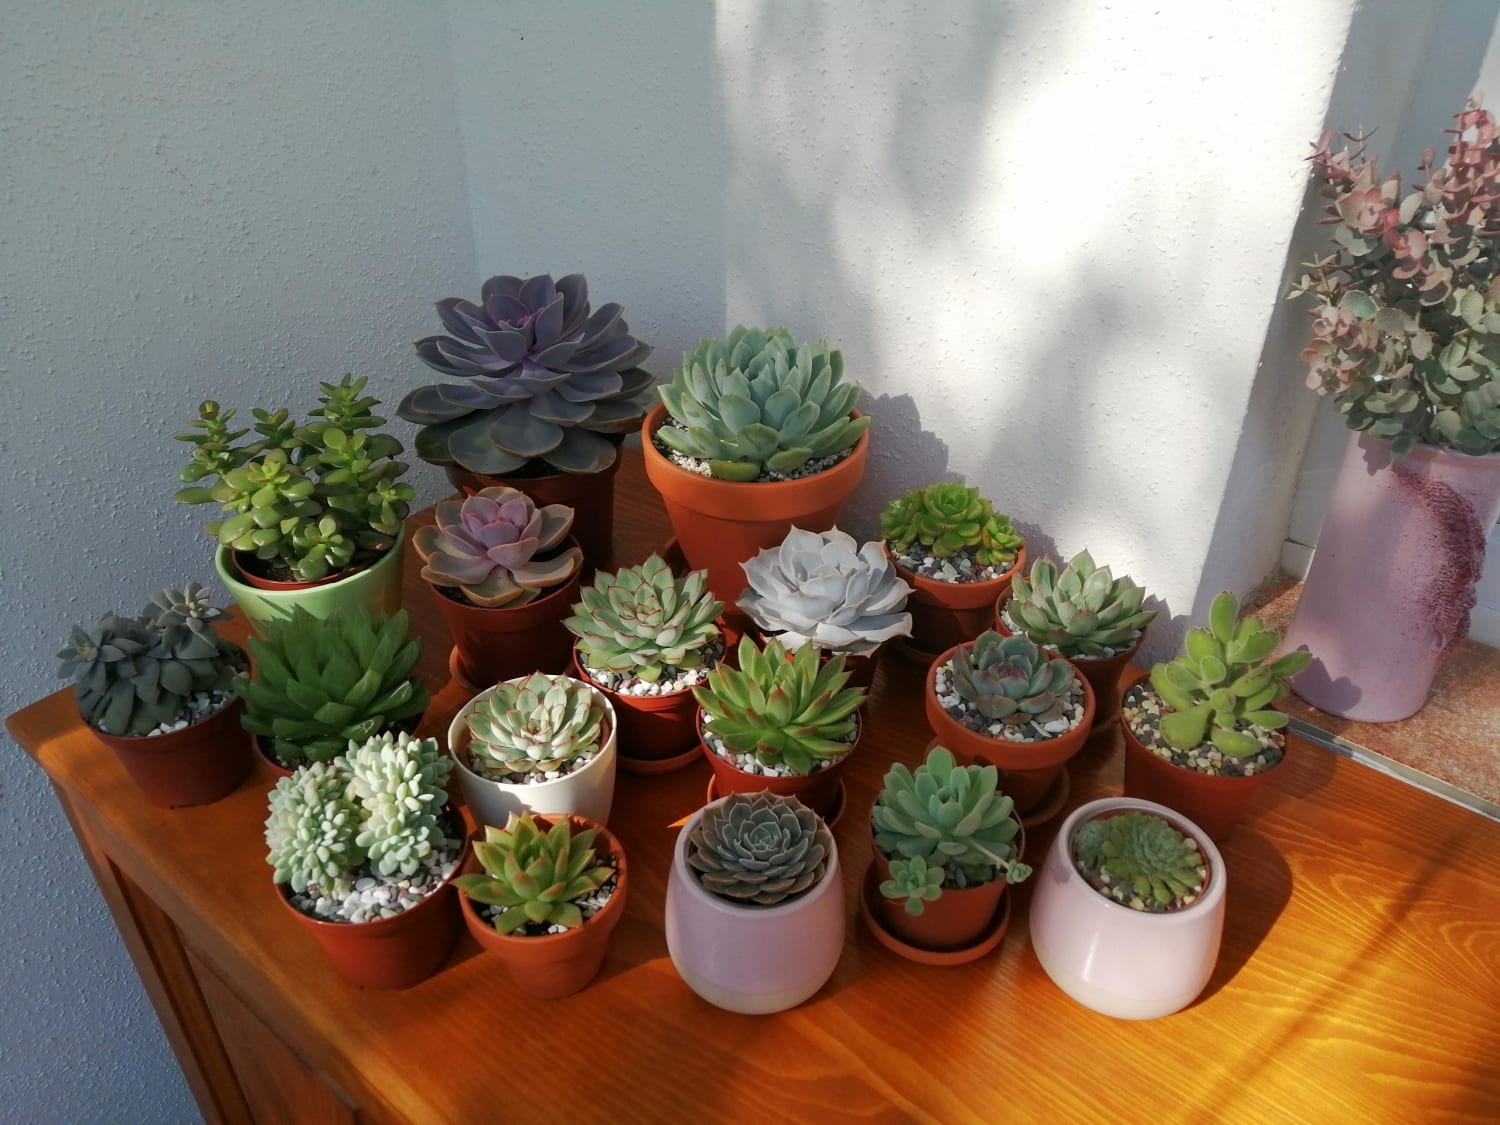 My precious indoor garden